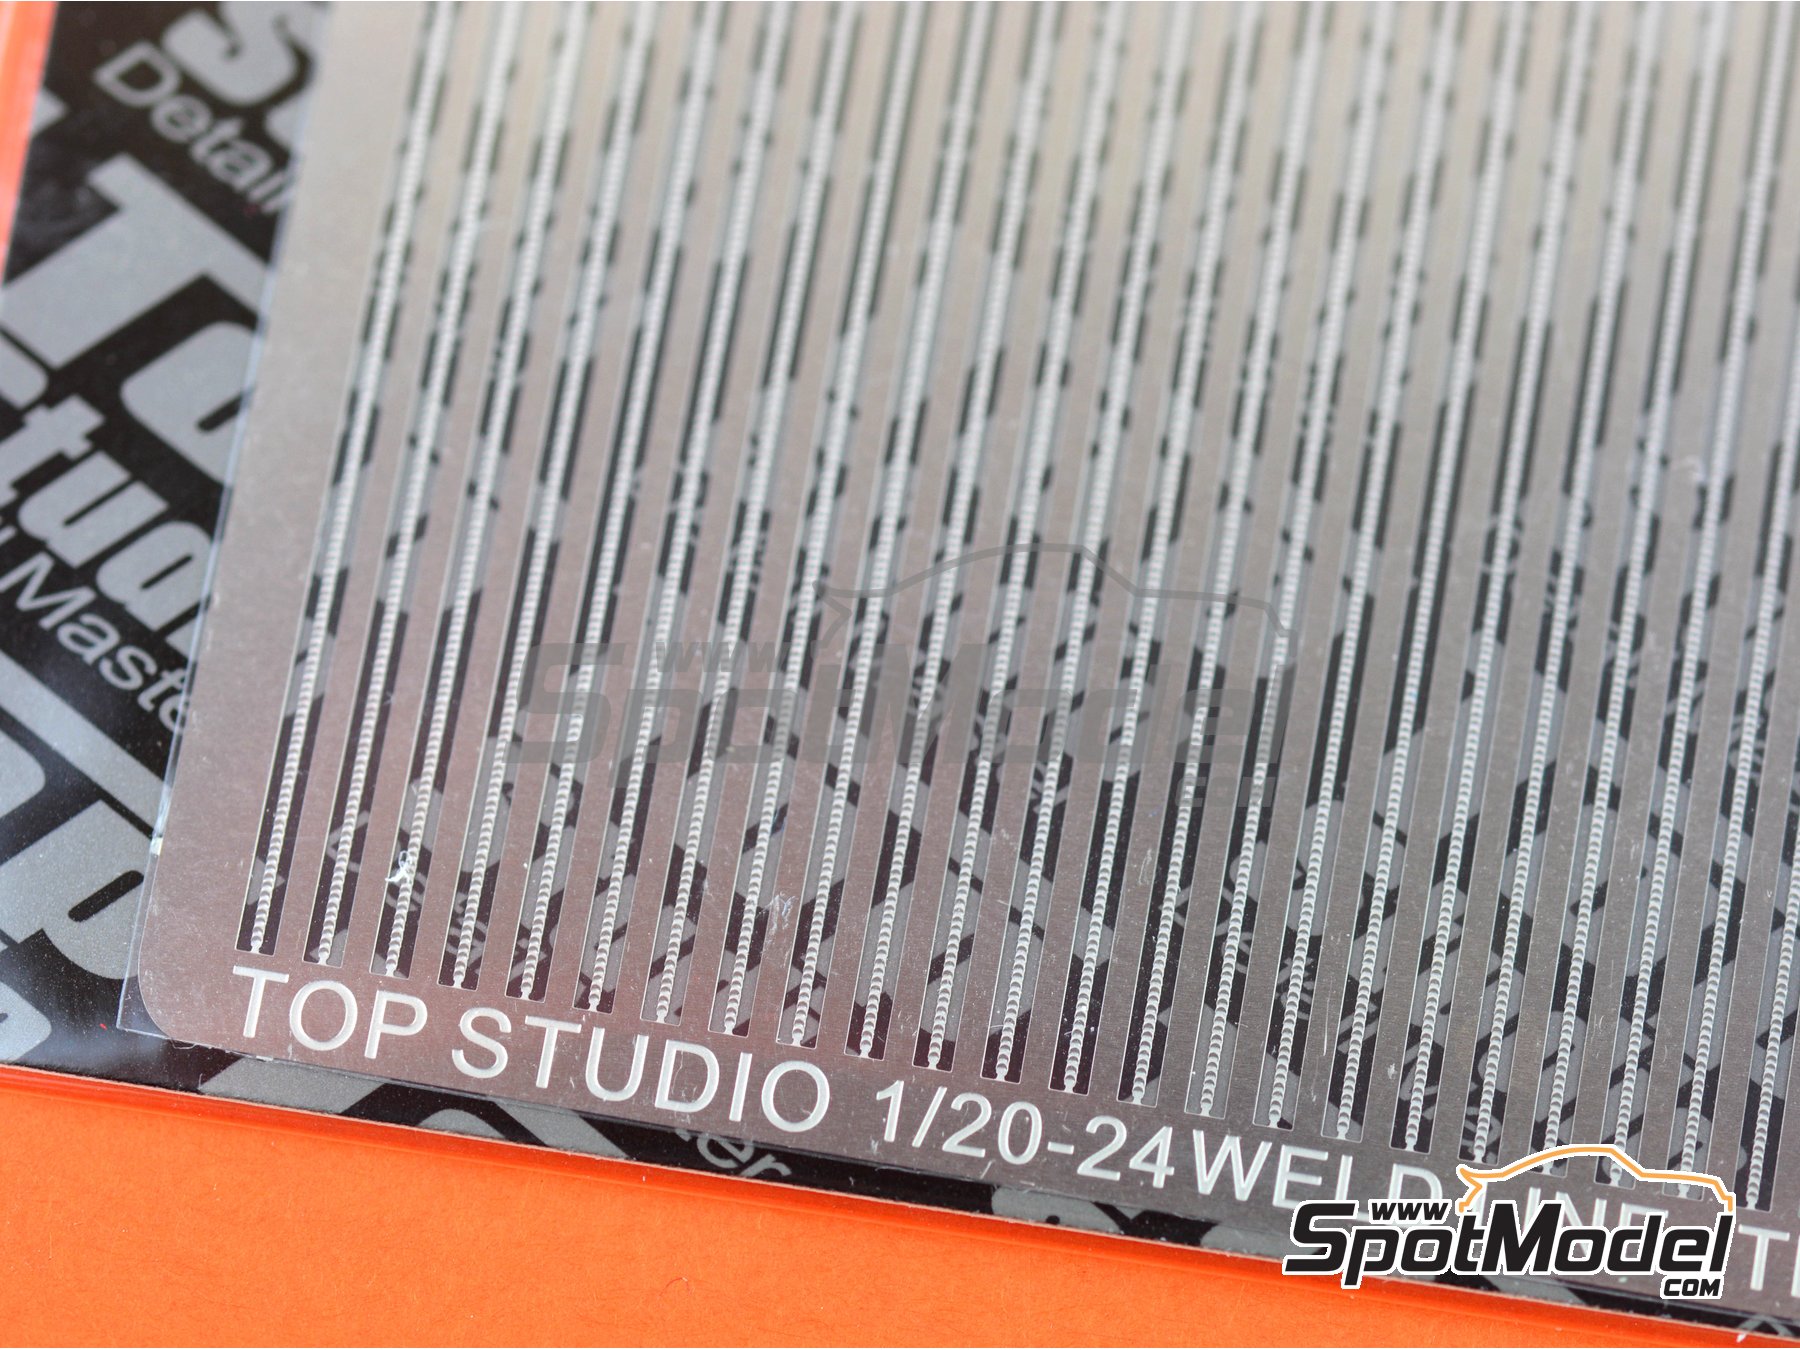 Top Studio #TD23132 1/20-1/24 Photo-etched Weld Line 